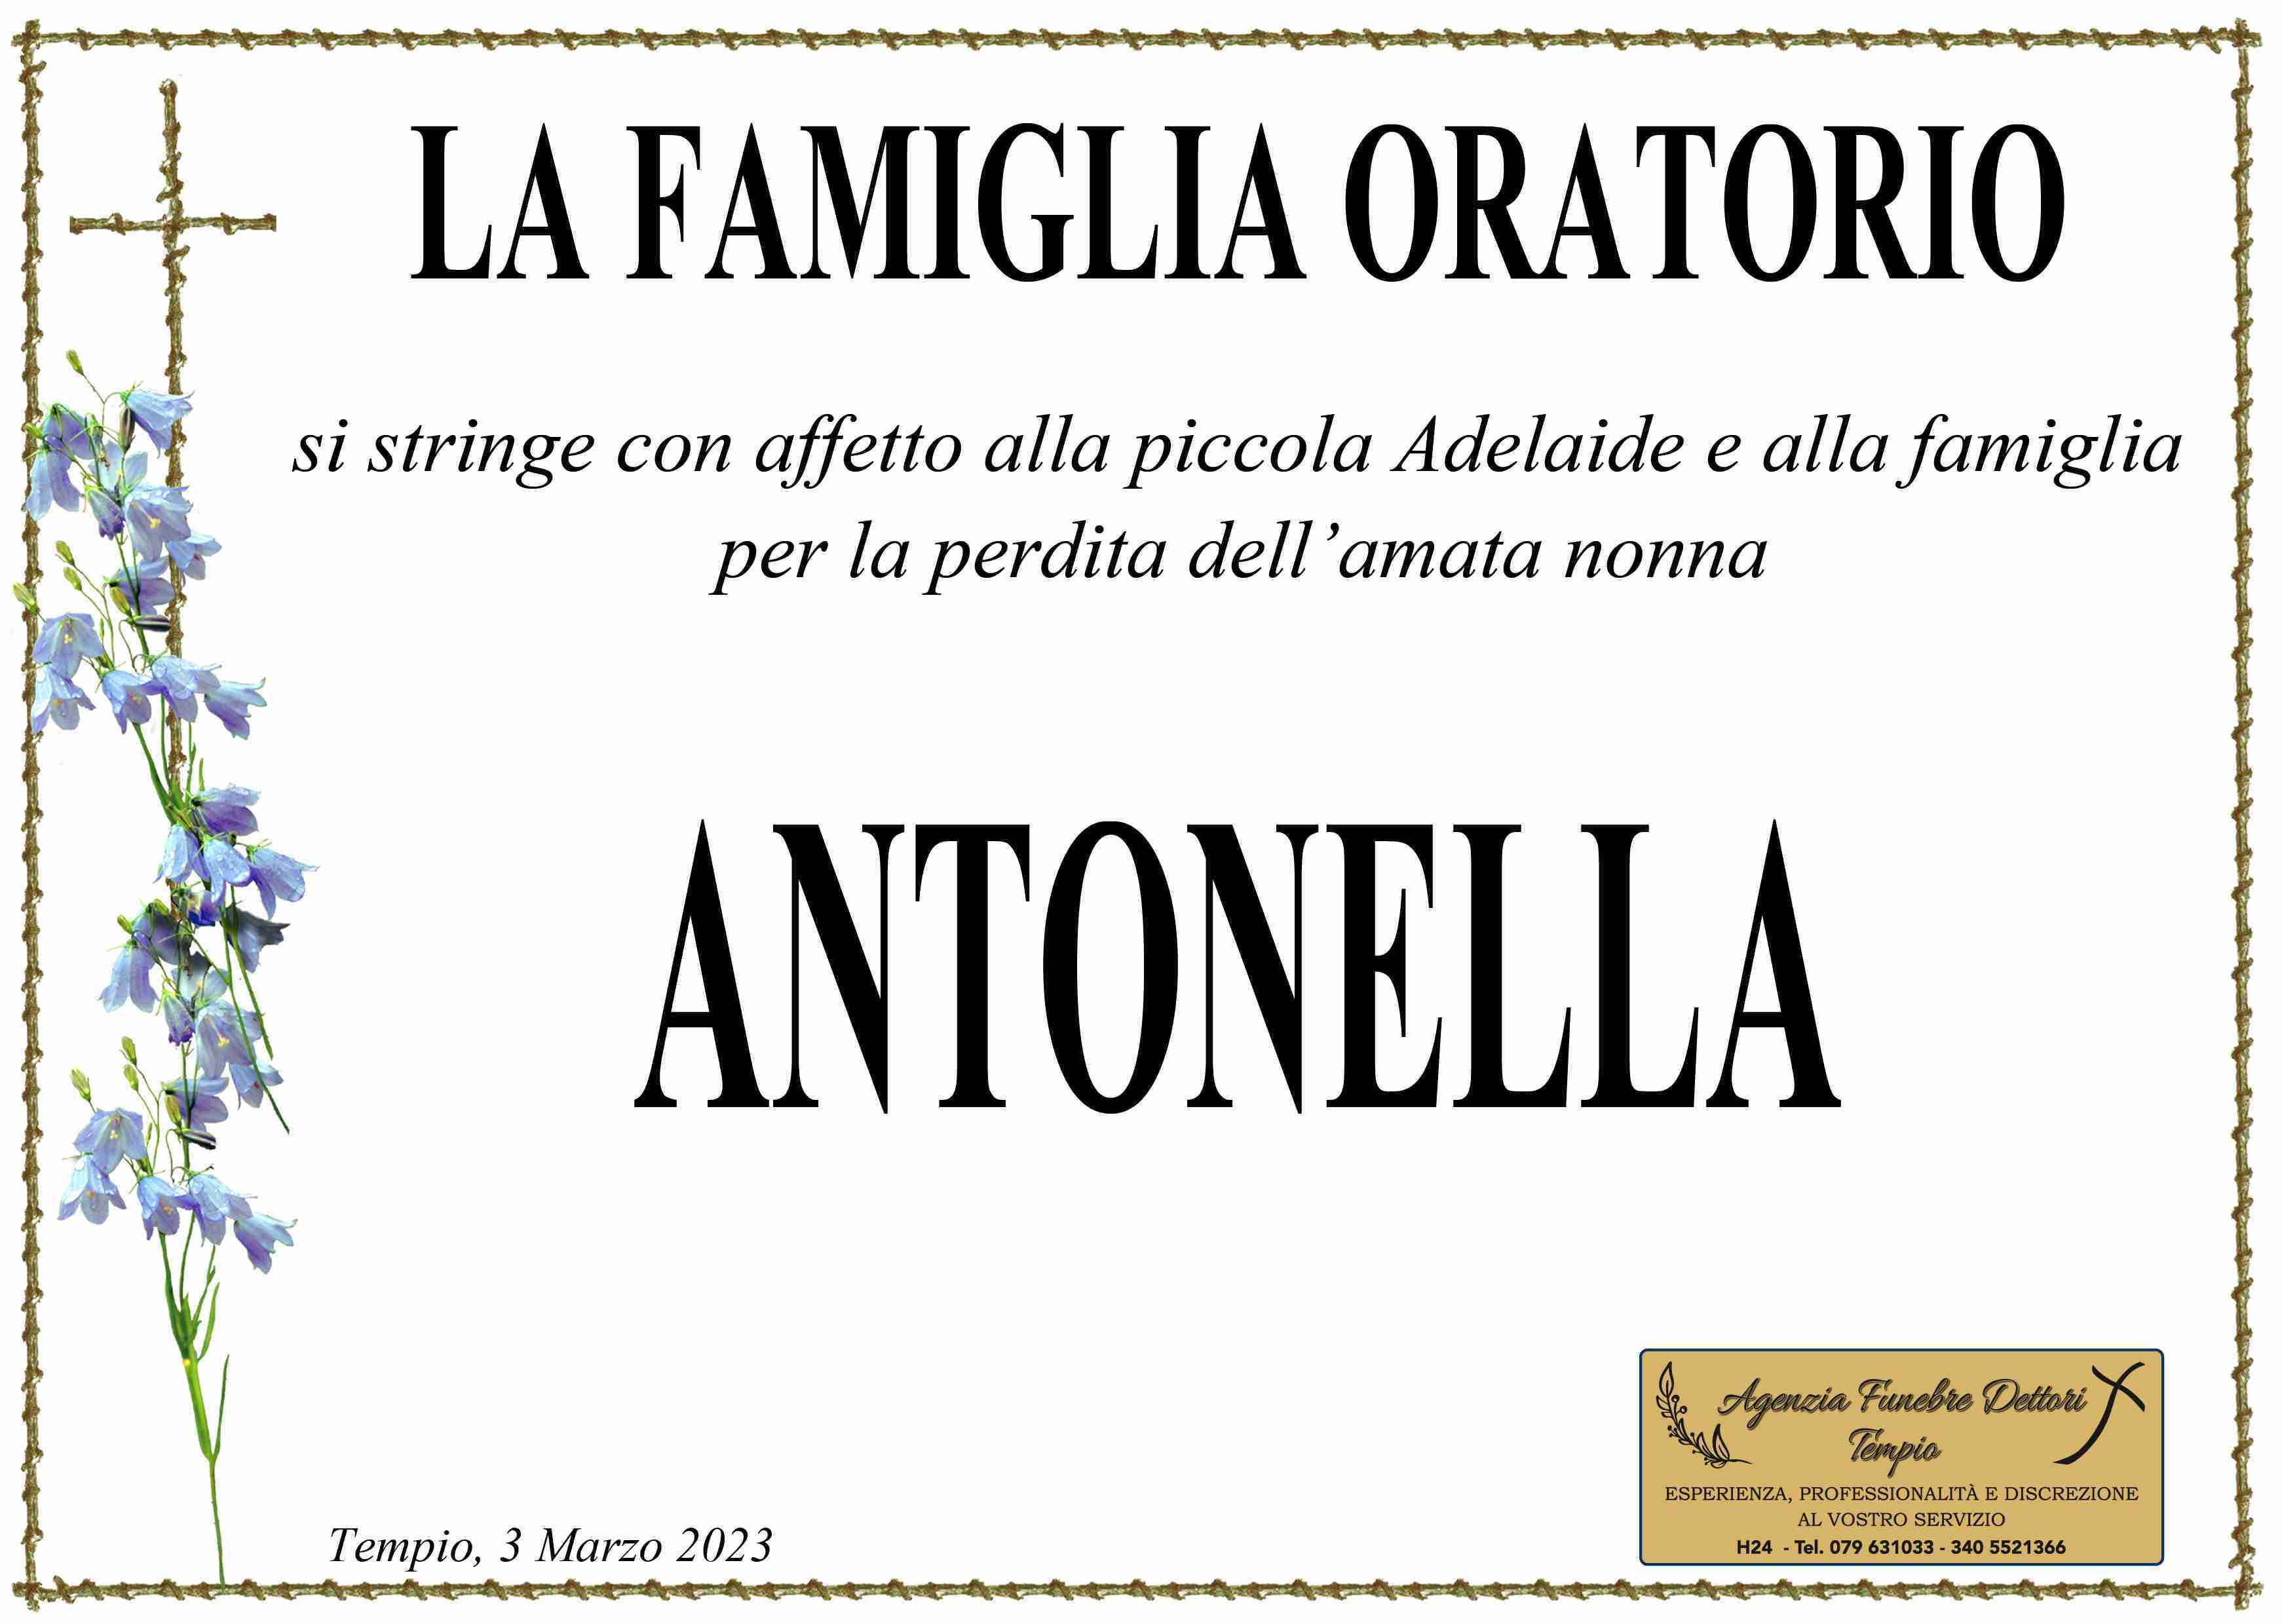 Antonella Simula